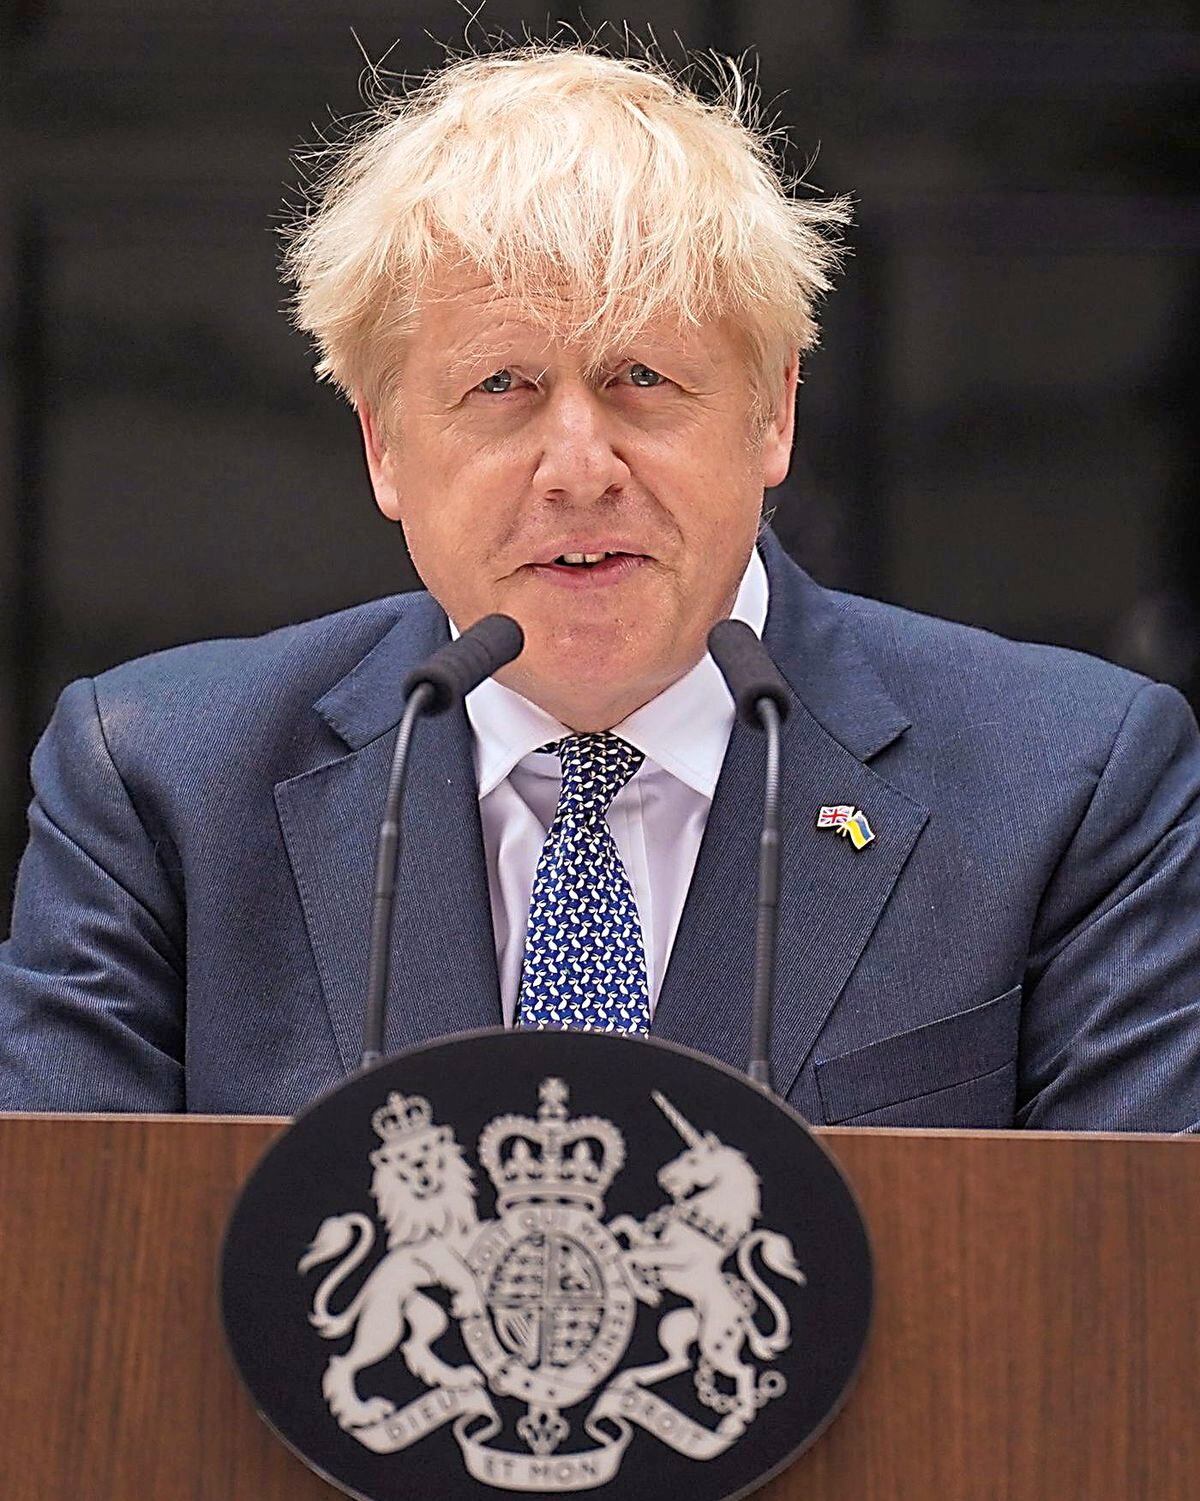 Prime Minister Boris Johnson finally quit